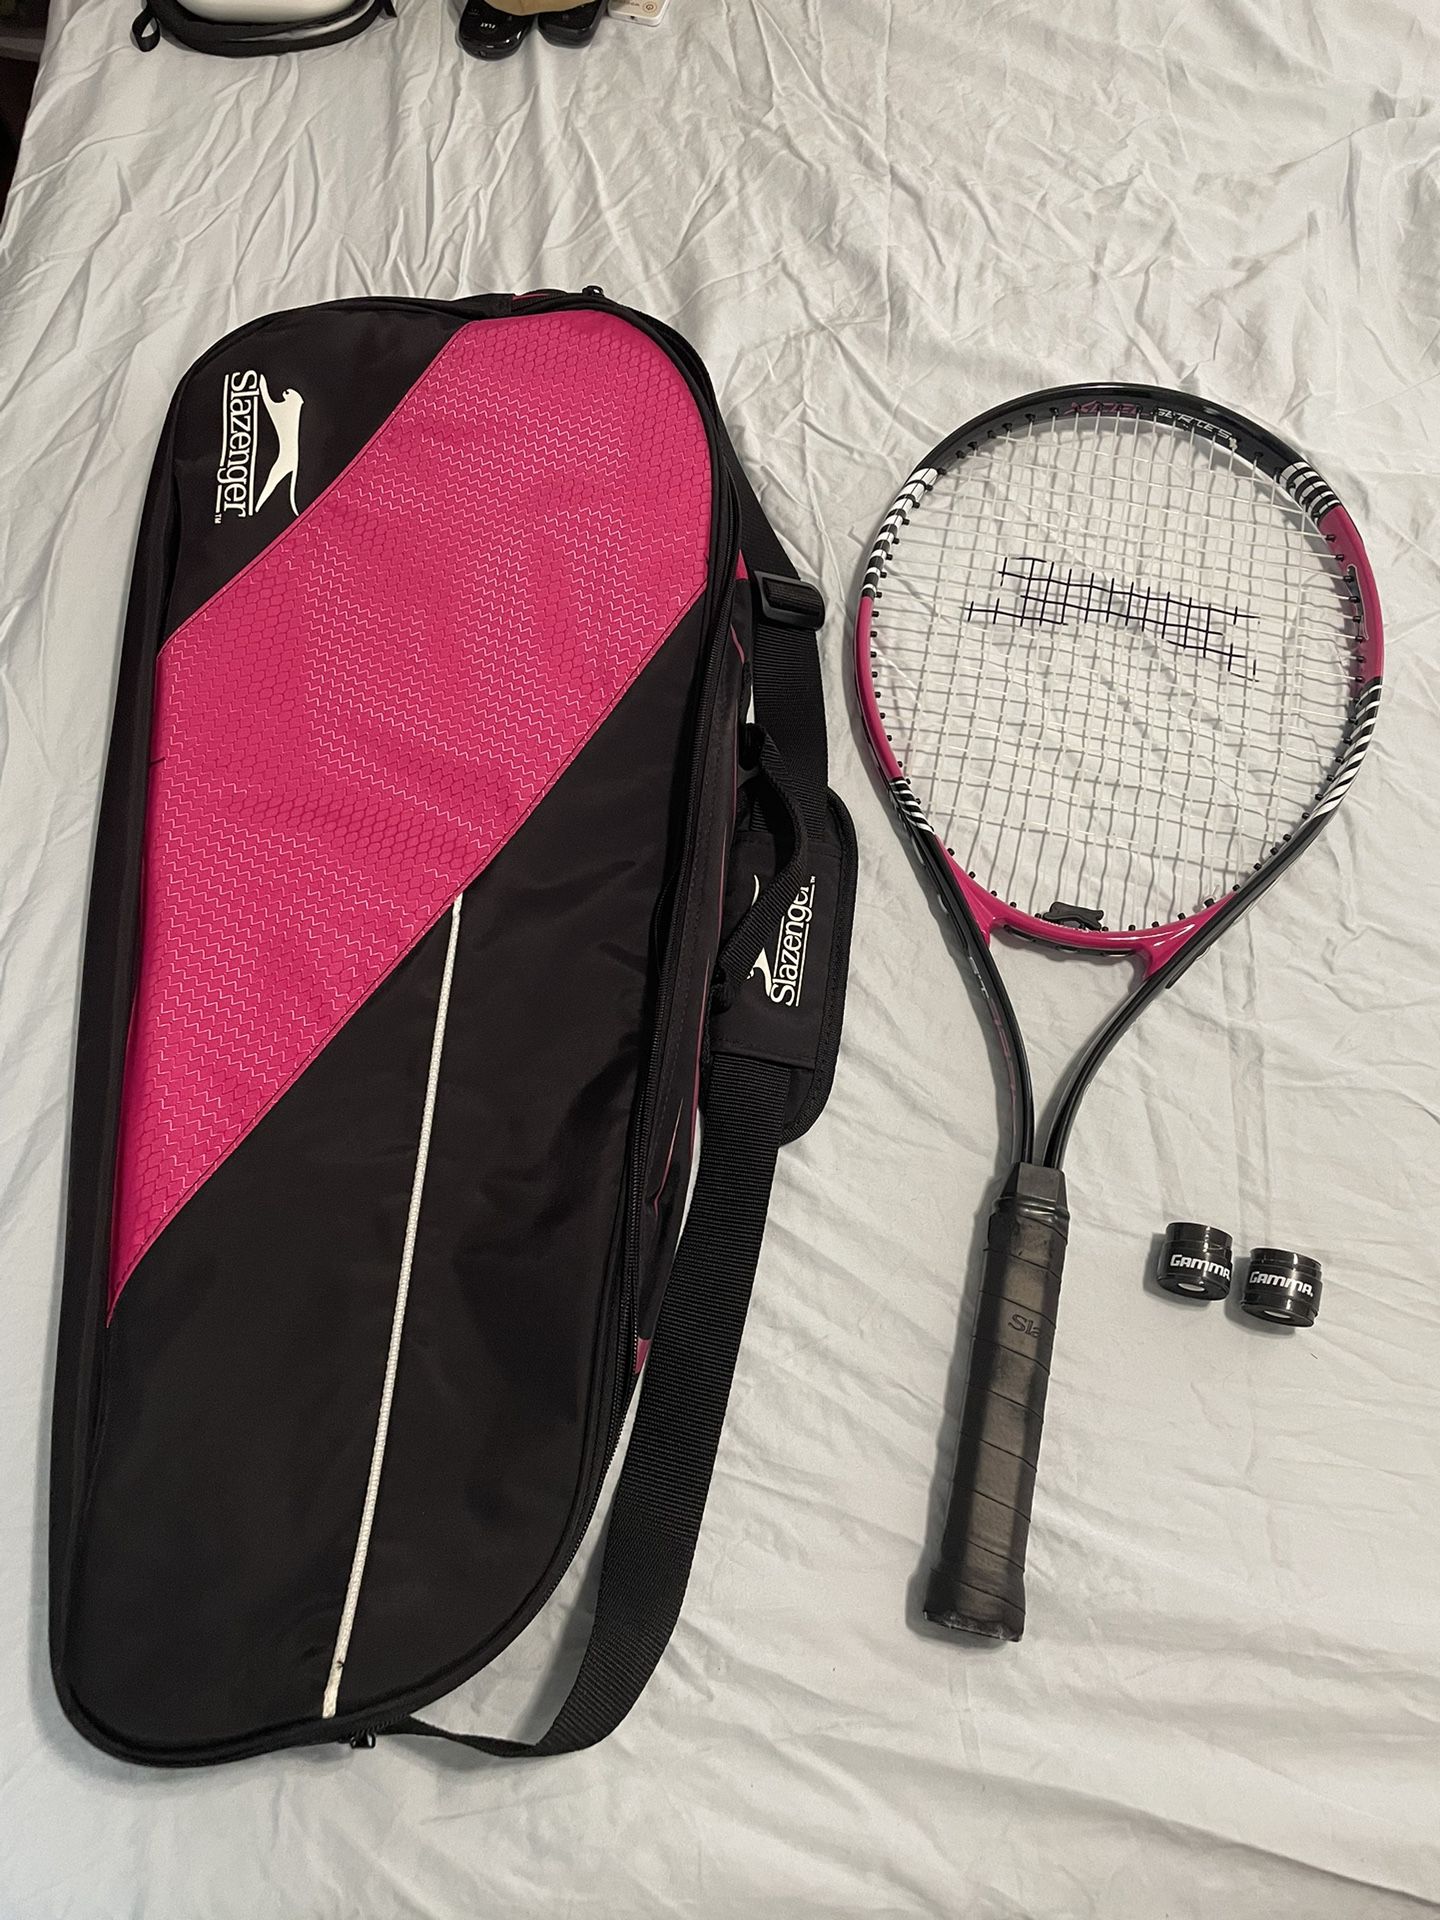 Slazenger Tennis Racket & bag